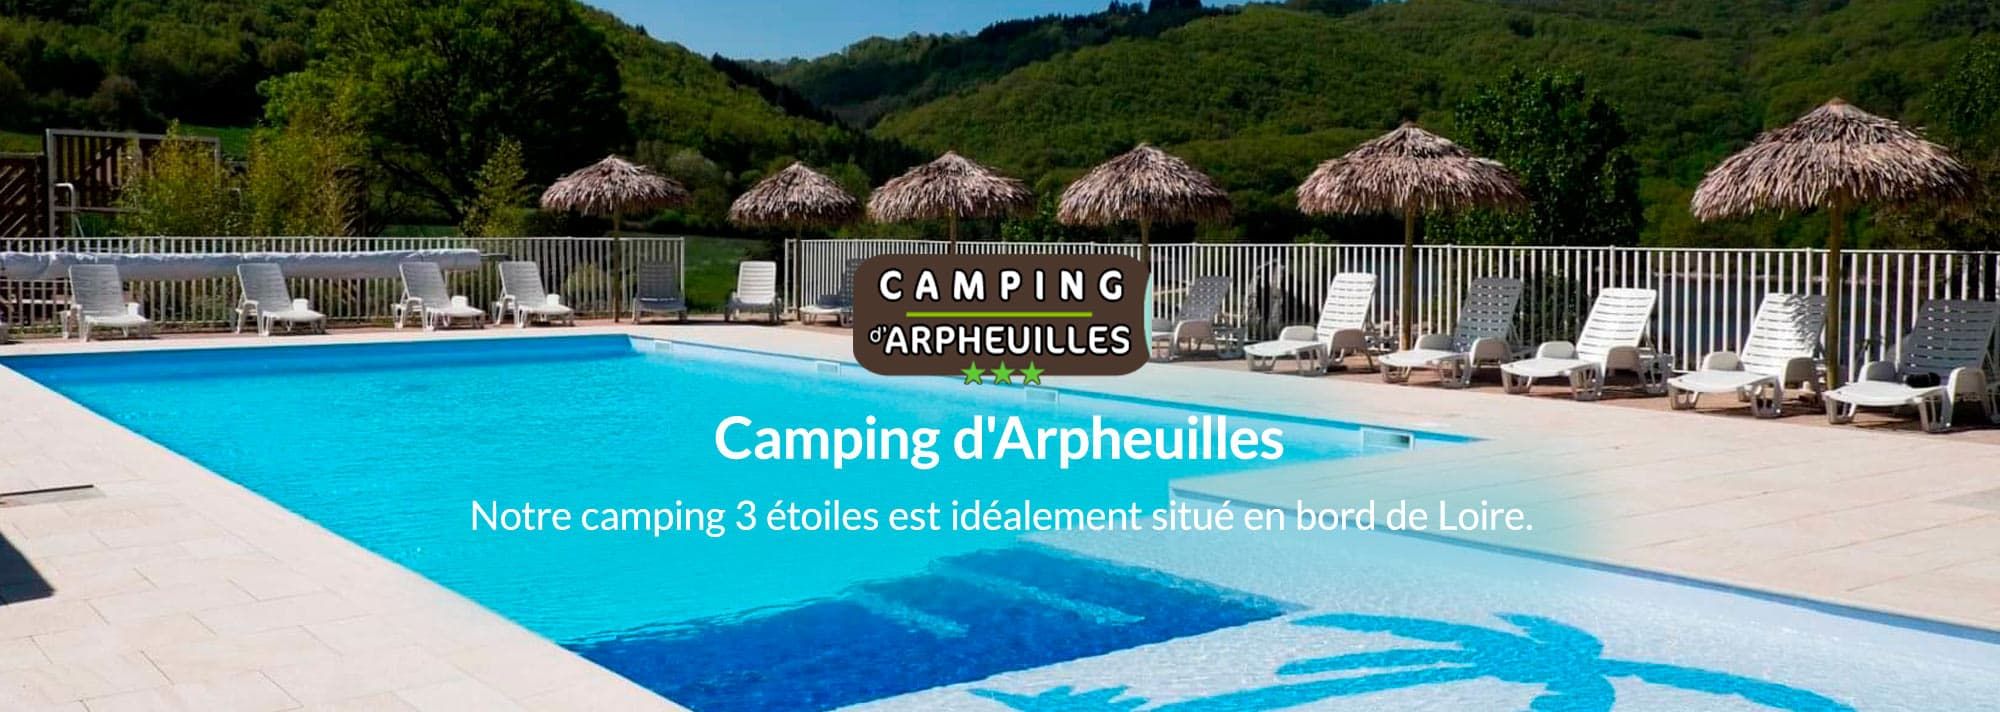 https://www.camping-arpheuilles.com